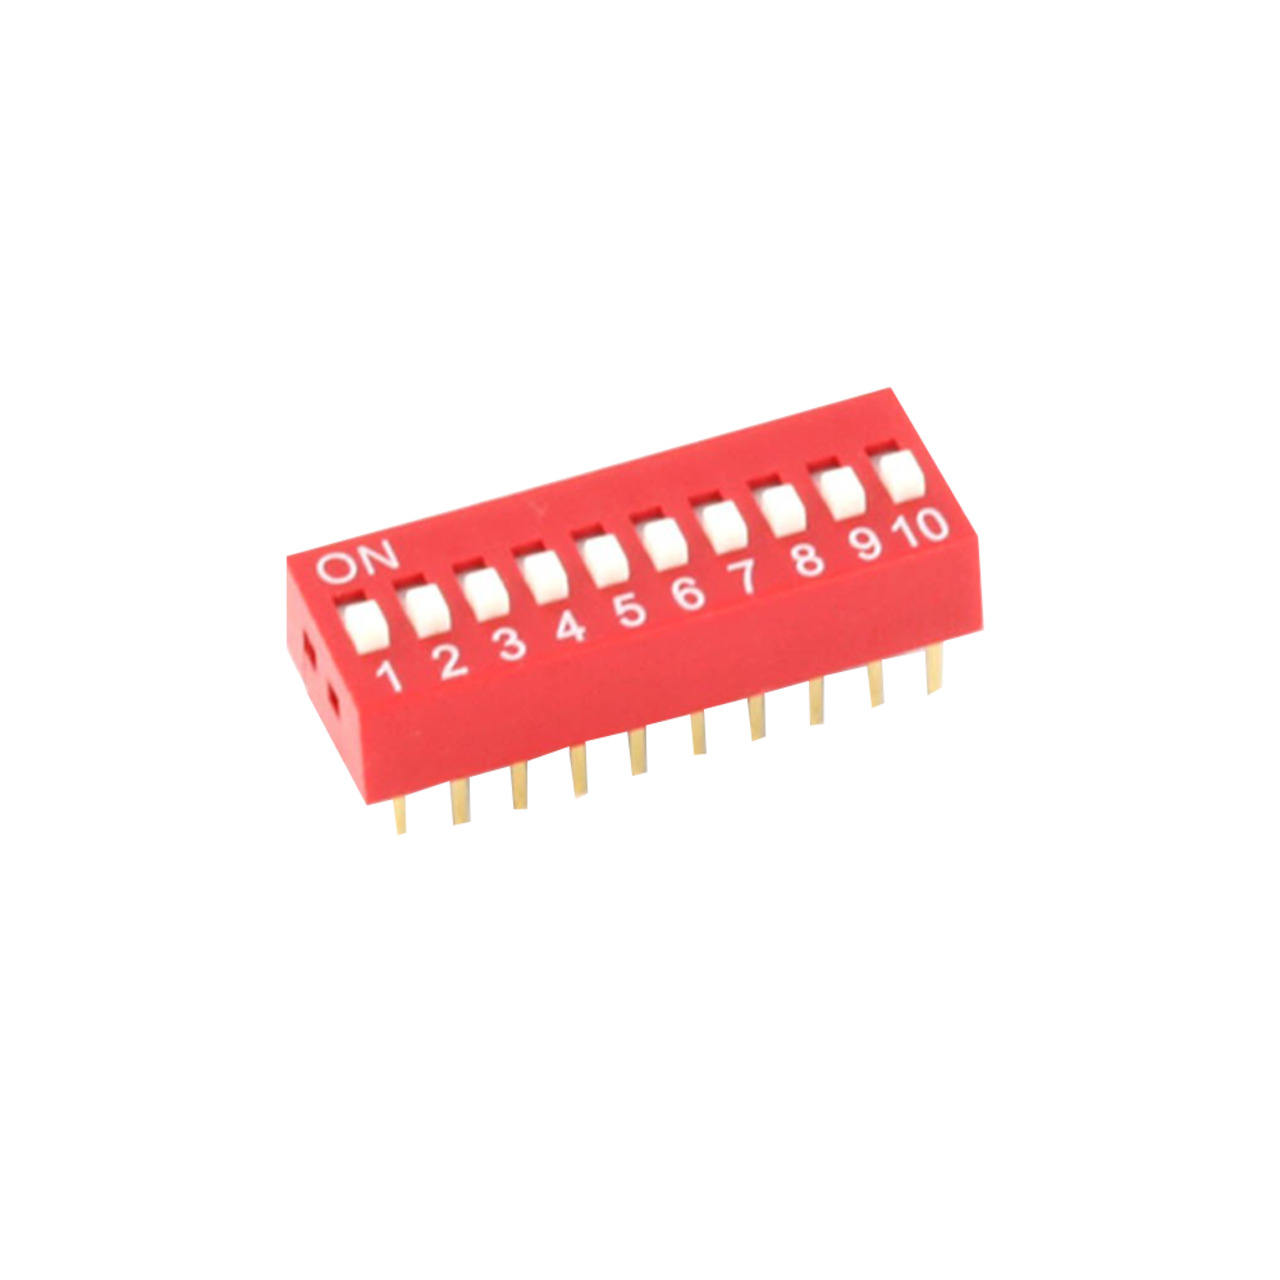 DIP-Schalter RM2-54 10-pol unter Komponenten